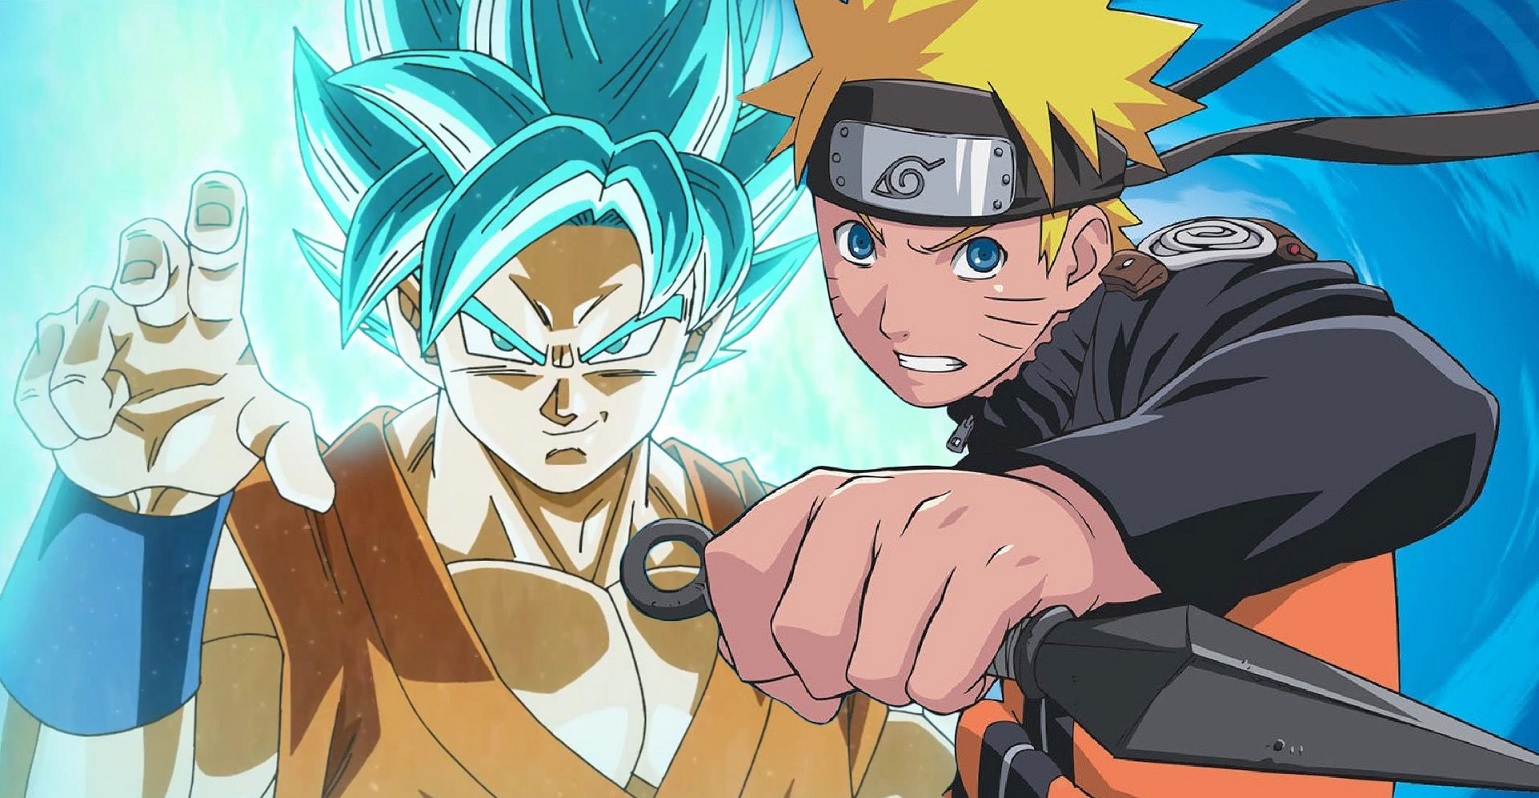 Artista fez um épico crossover entre Naruto e Dragon Ball